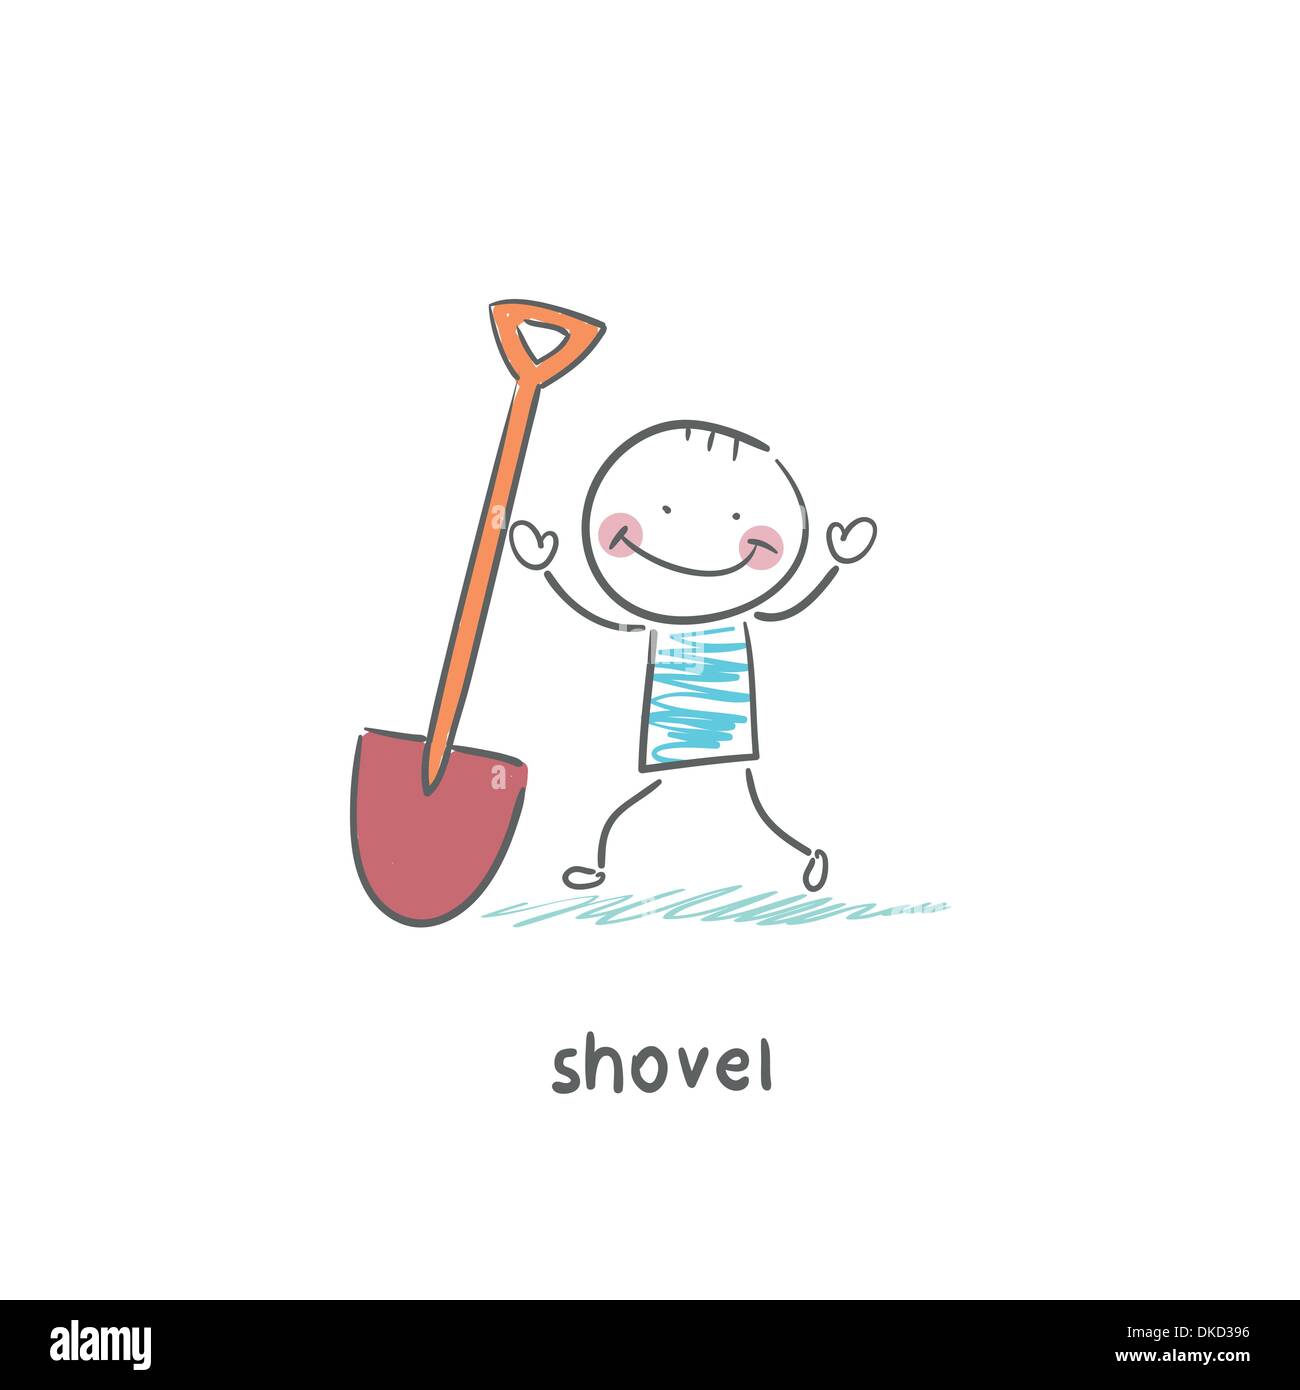 shovel Stock Vector